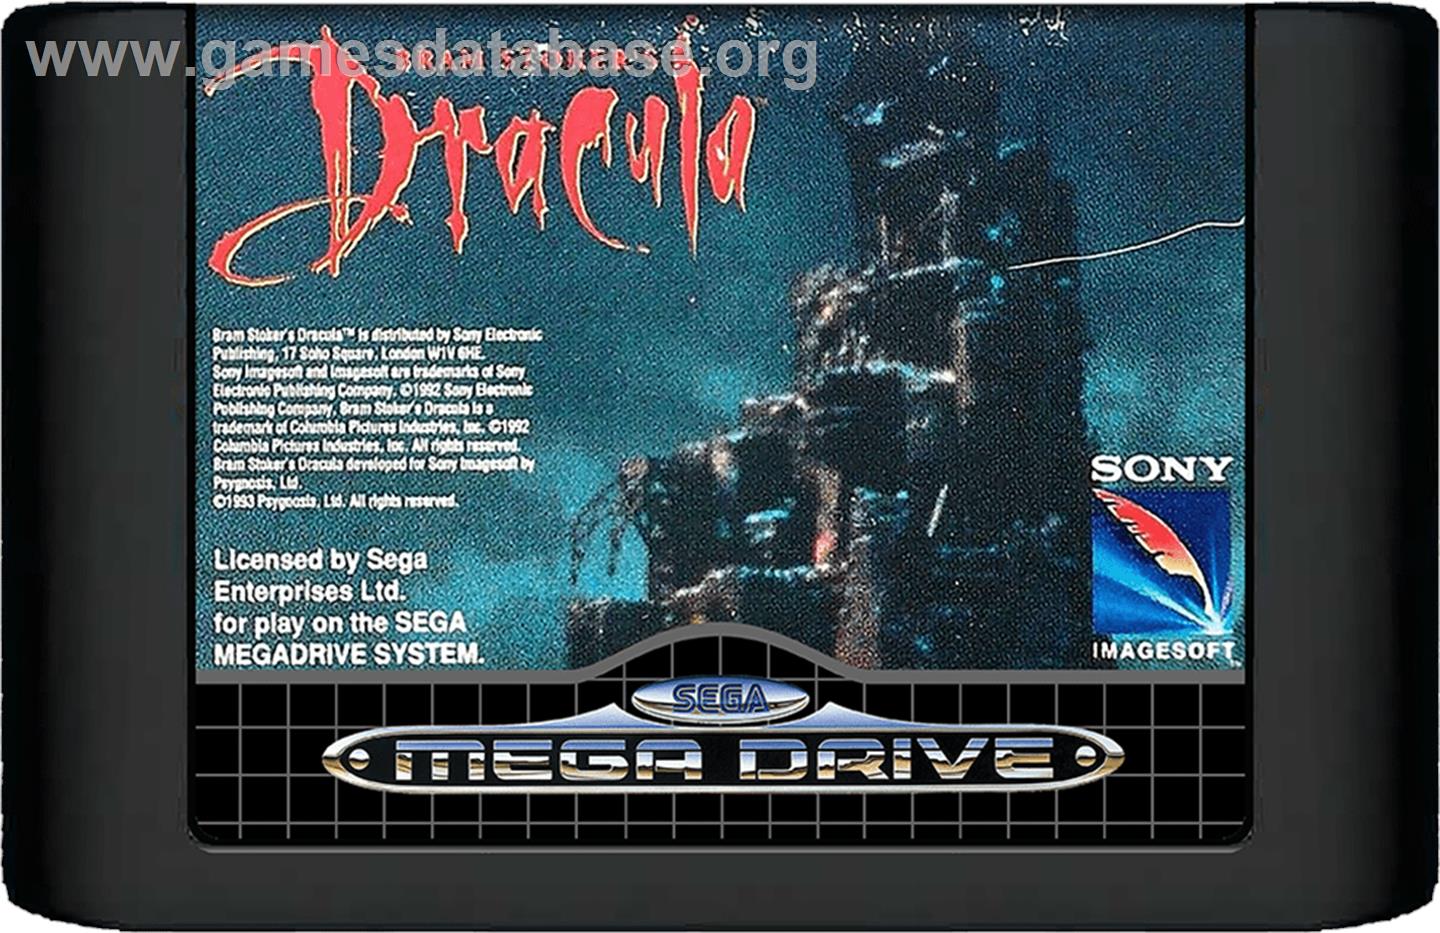 Bram Stoker's Dracula - Sega Genesis - Artwork - Cartridge